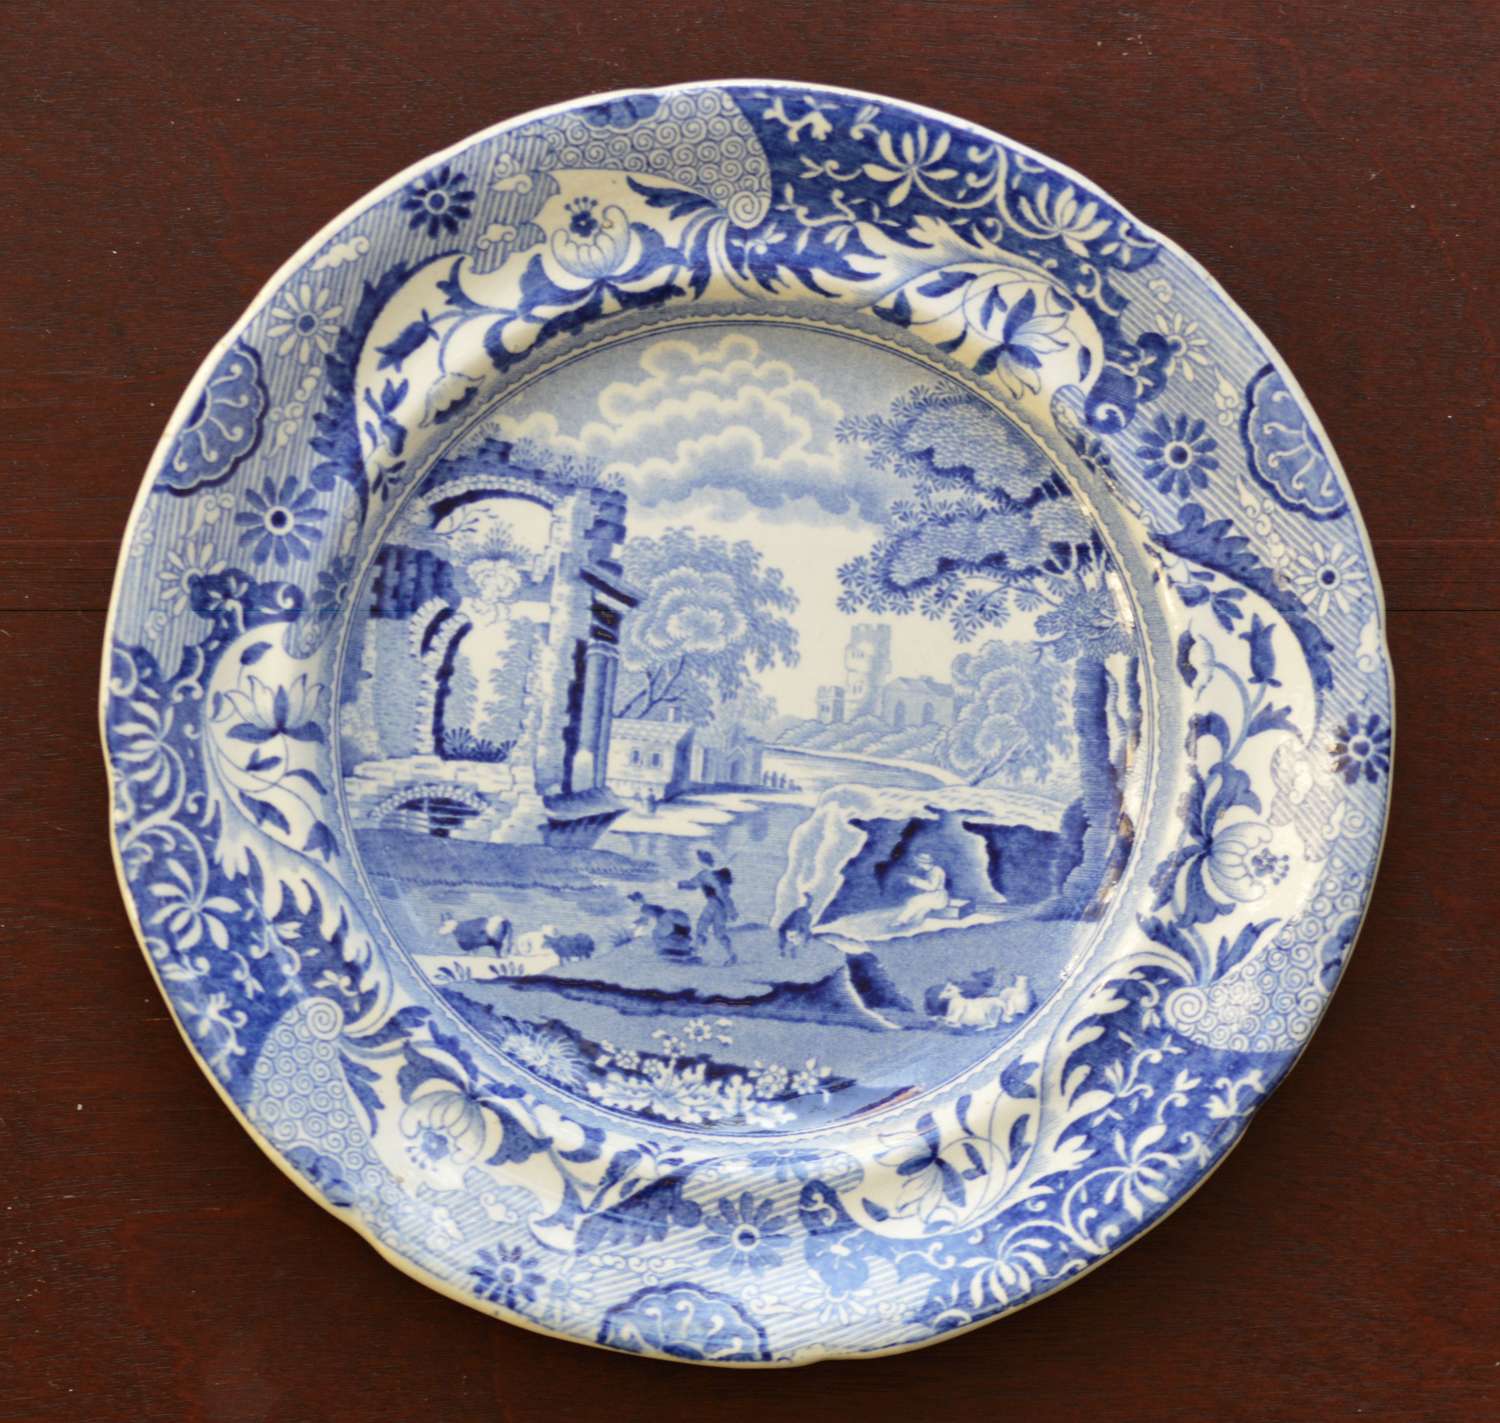 Zachariah Boyle - Italian Plate - c1828 -1850 - Blue and White